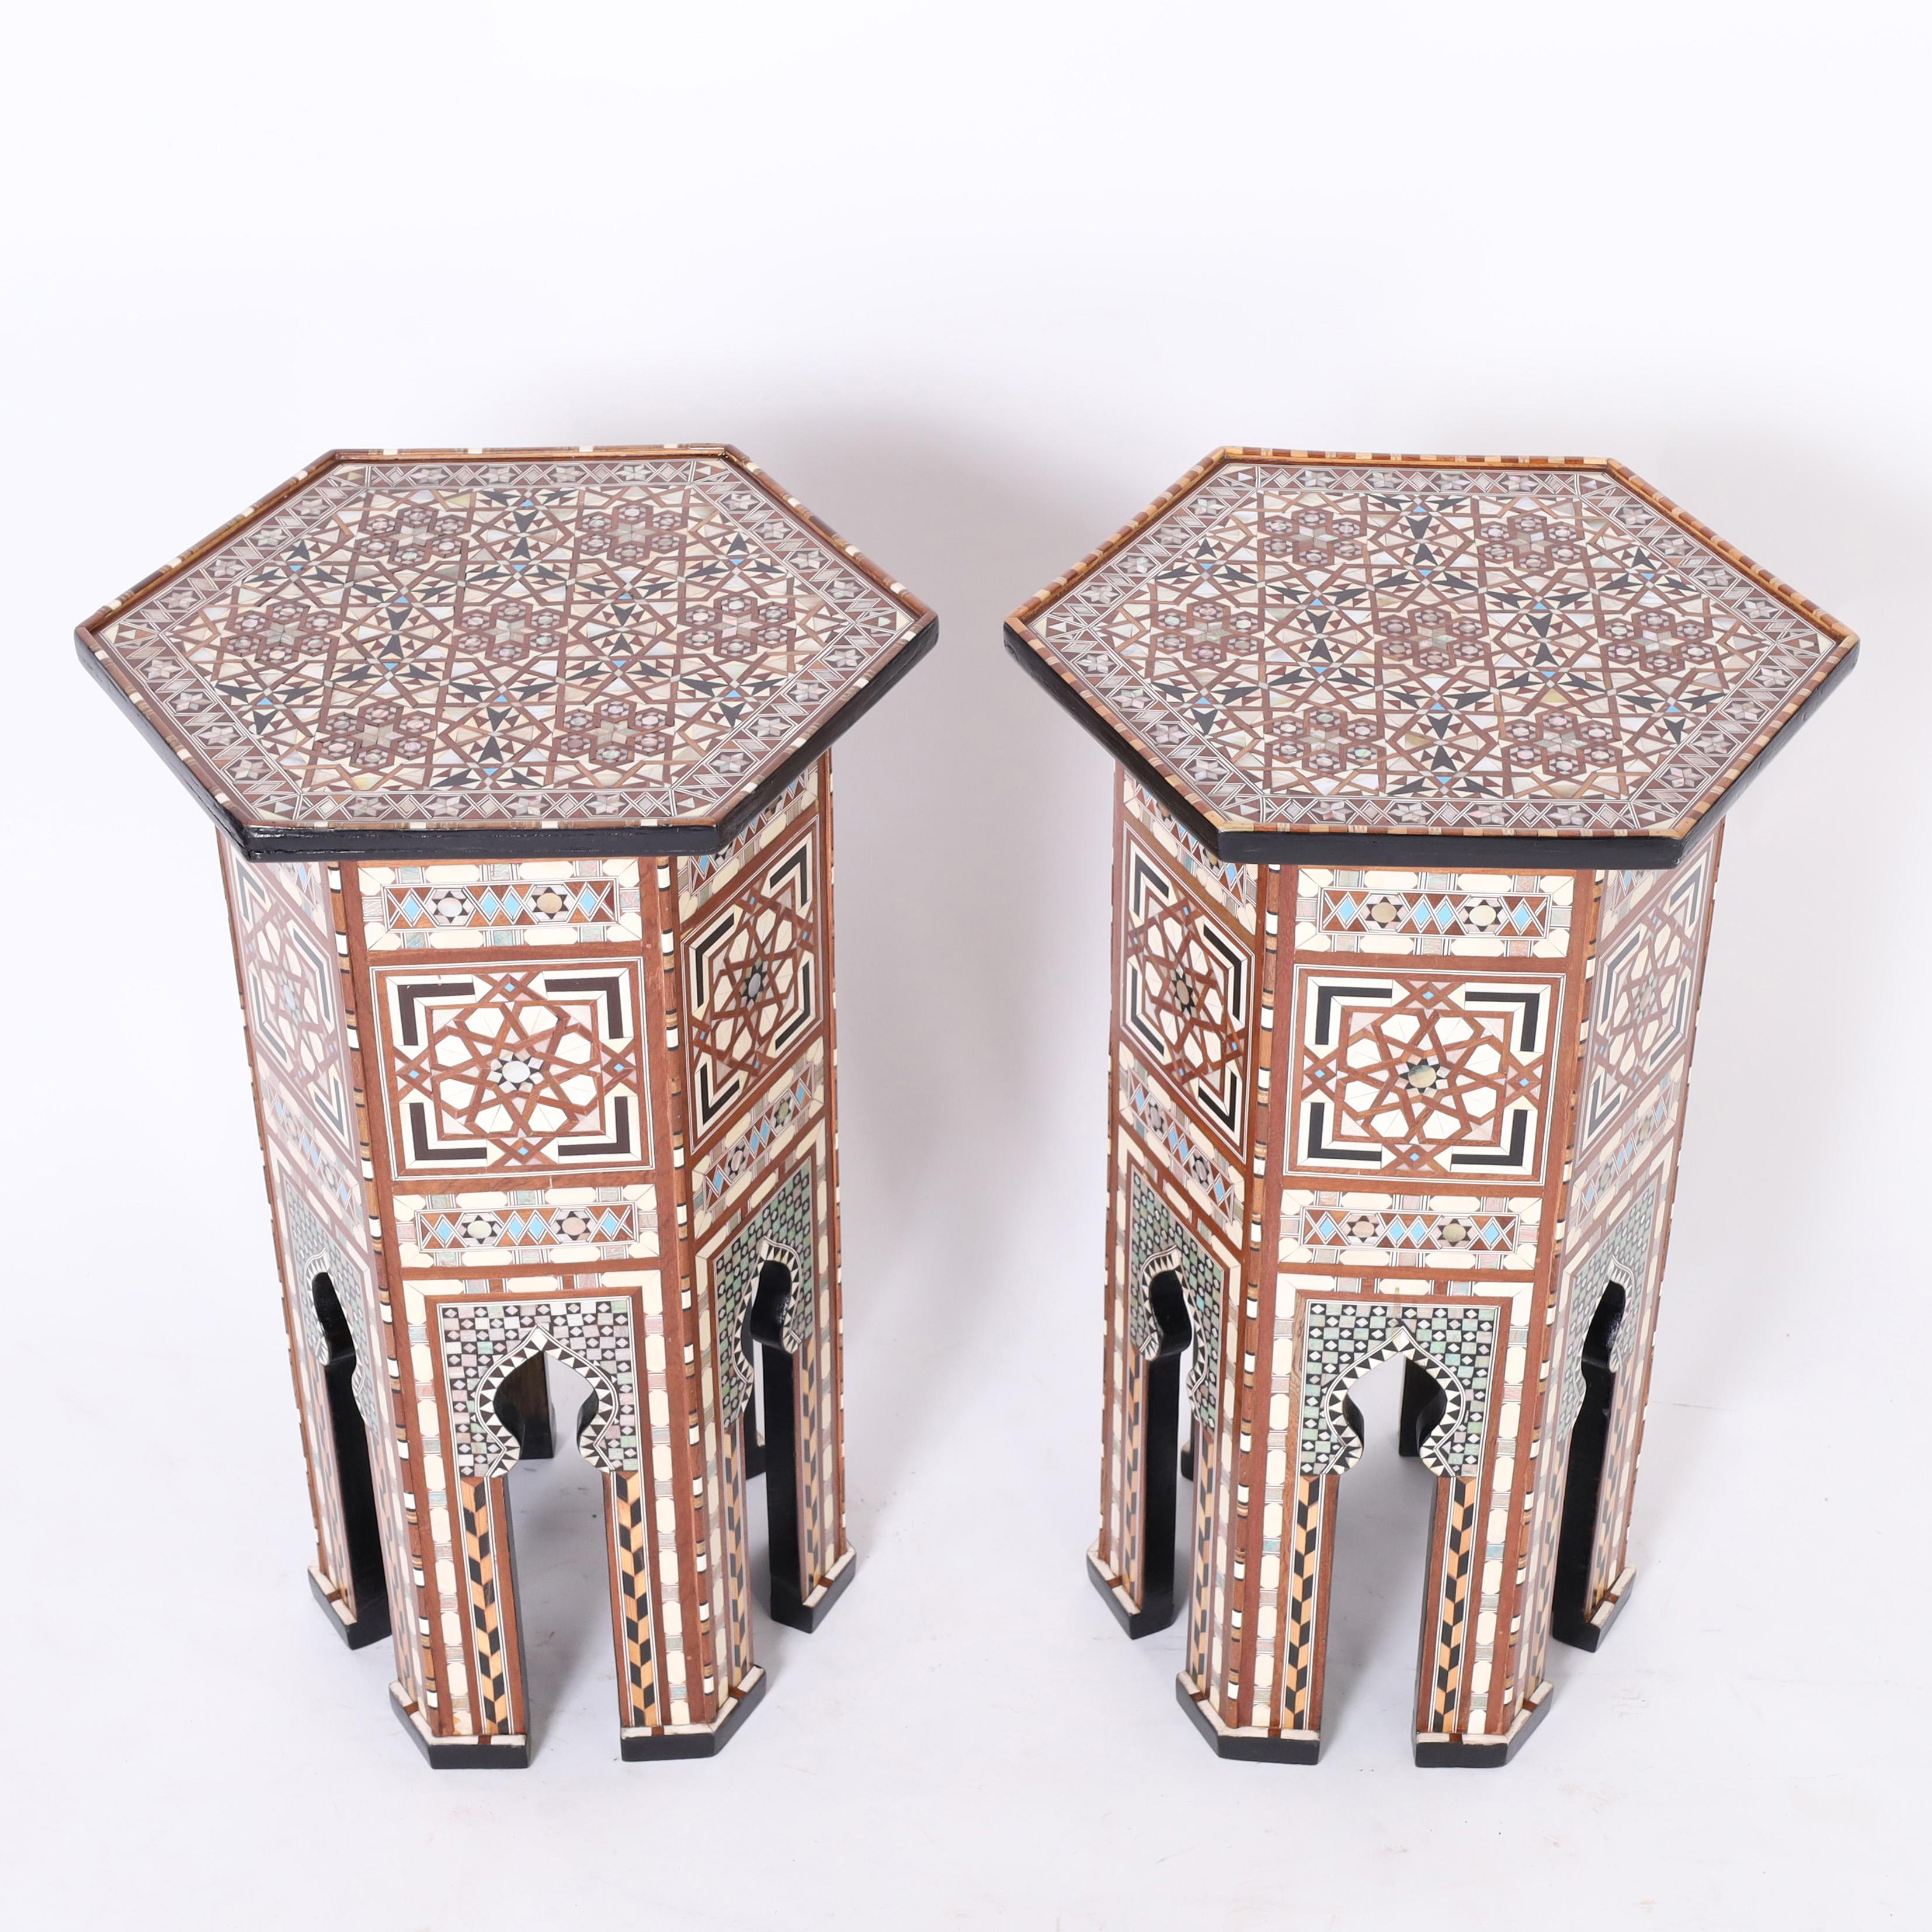 Hervorragendes Paar marokkanischer Ständer oder Sockel aus Mahagoni in sechseckiger Form mit klassischen maurischen Bögen, verkleidet mit aufwändigen Intarsien aus Perlmutt, Ebenholz, Knochen und blau bemaltem Knochen in geometrischen Mustern. 